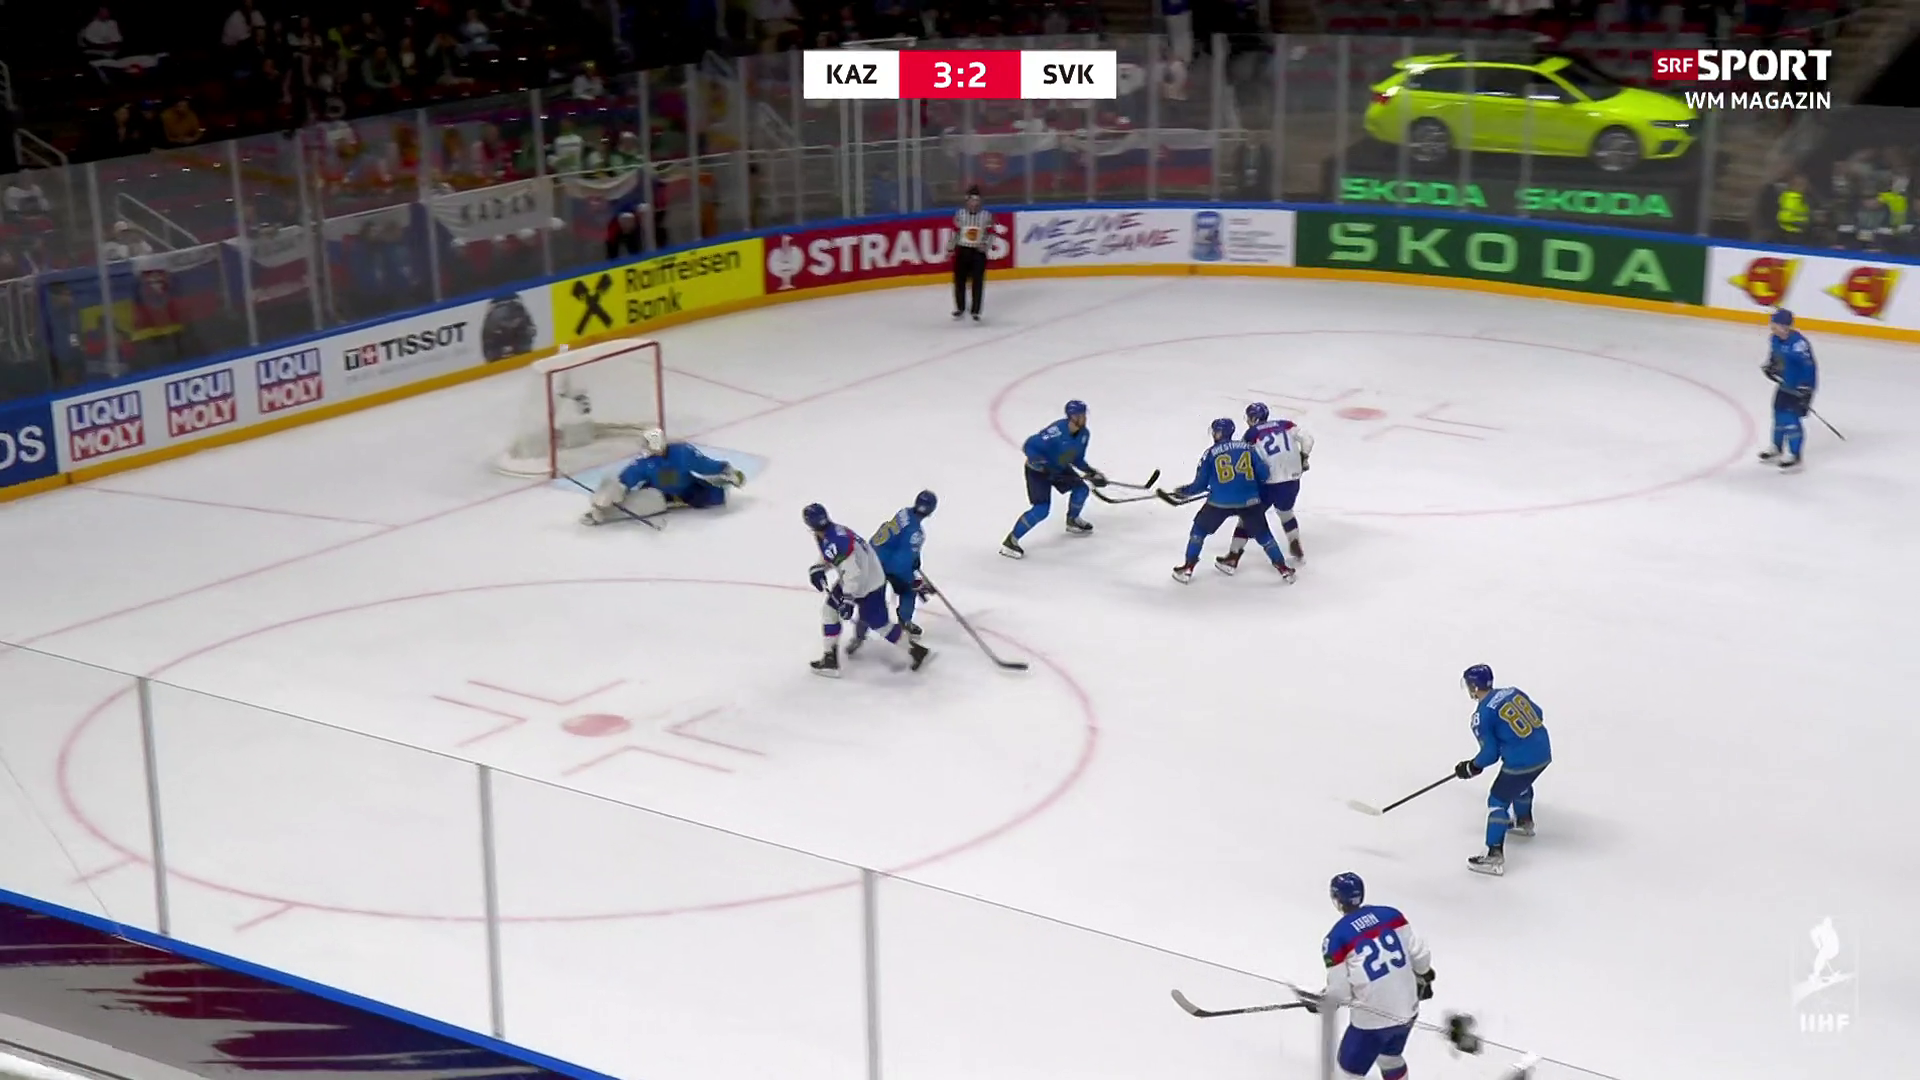 Eishockey-WM Highlights - Kasachstan düpiert die Slowakei nach Penaltyschiessen